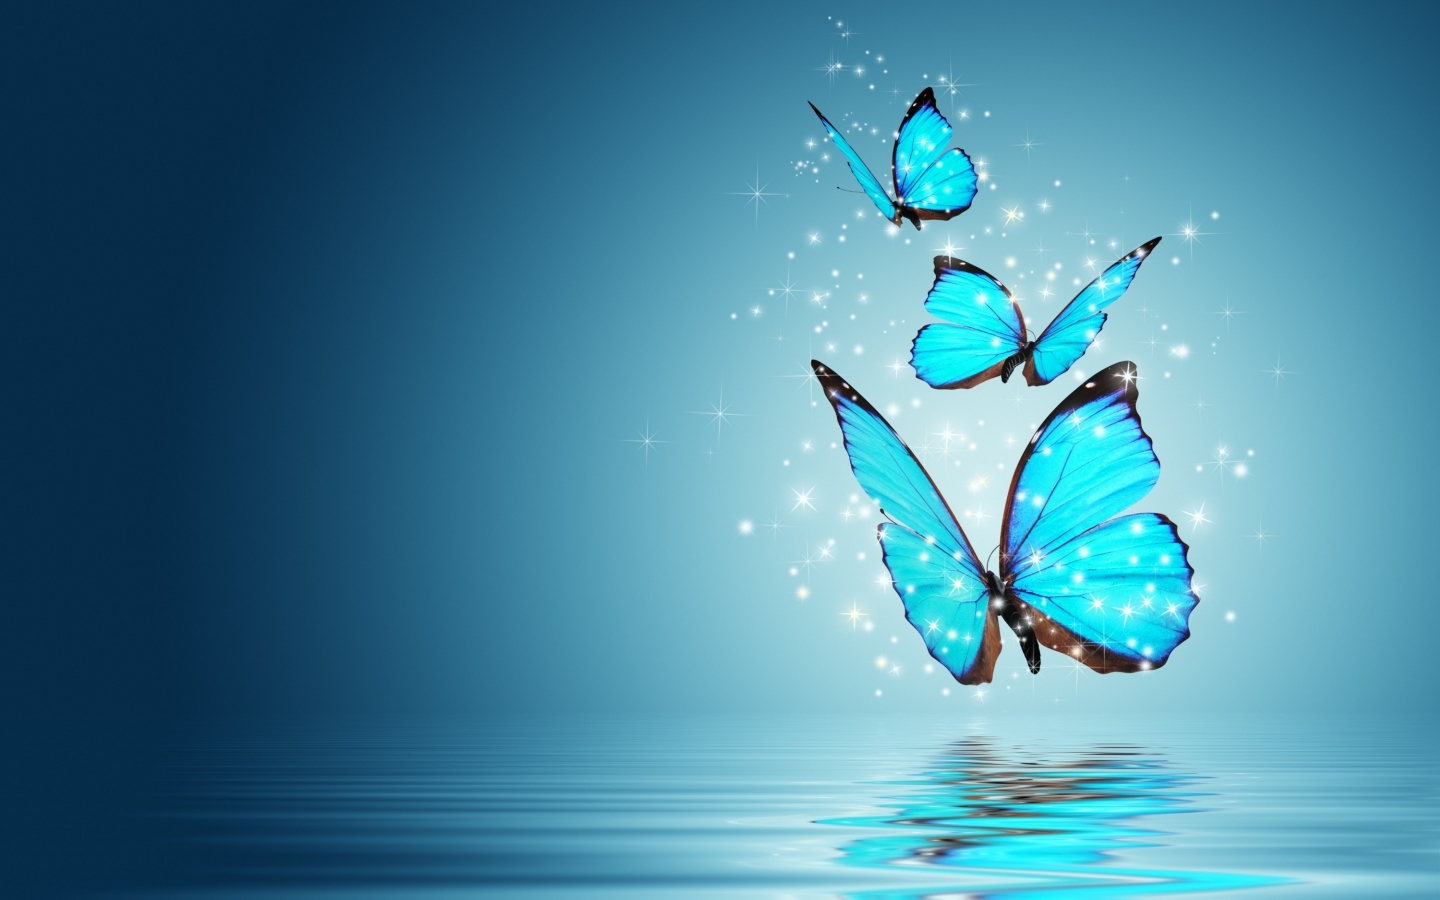 Blue Butterflies for 1440 x 900 widescreen resolution